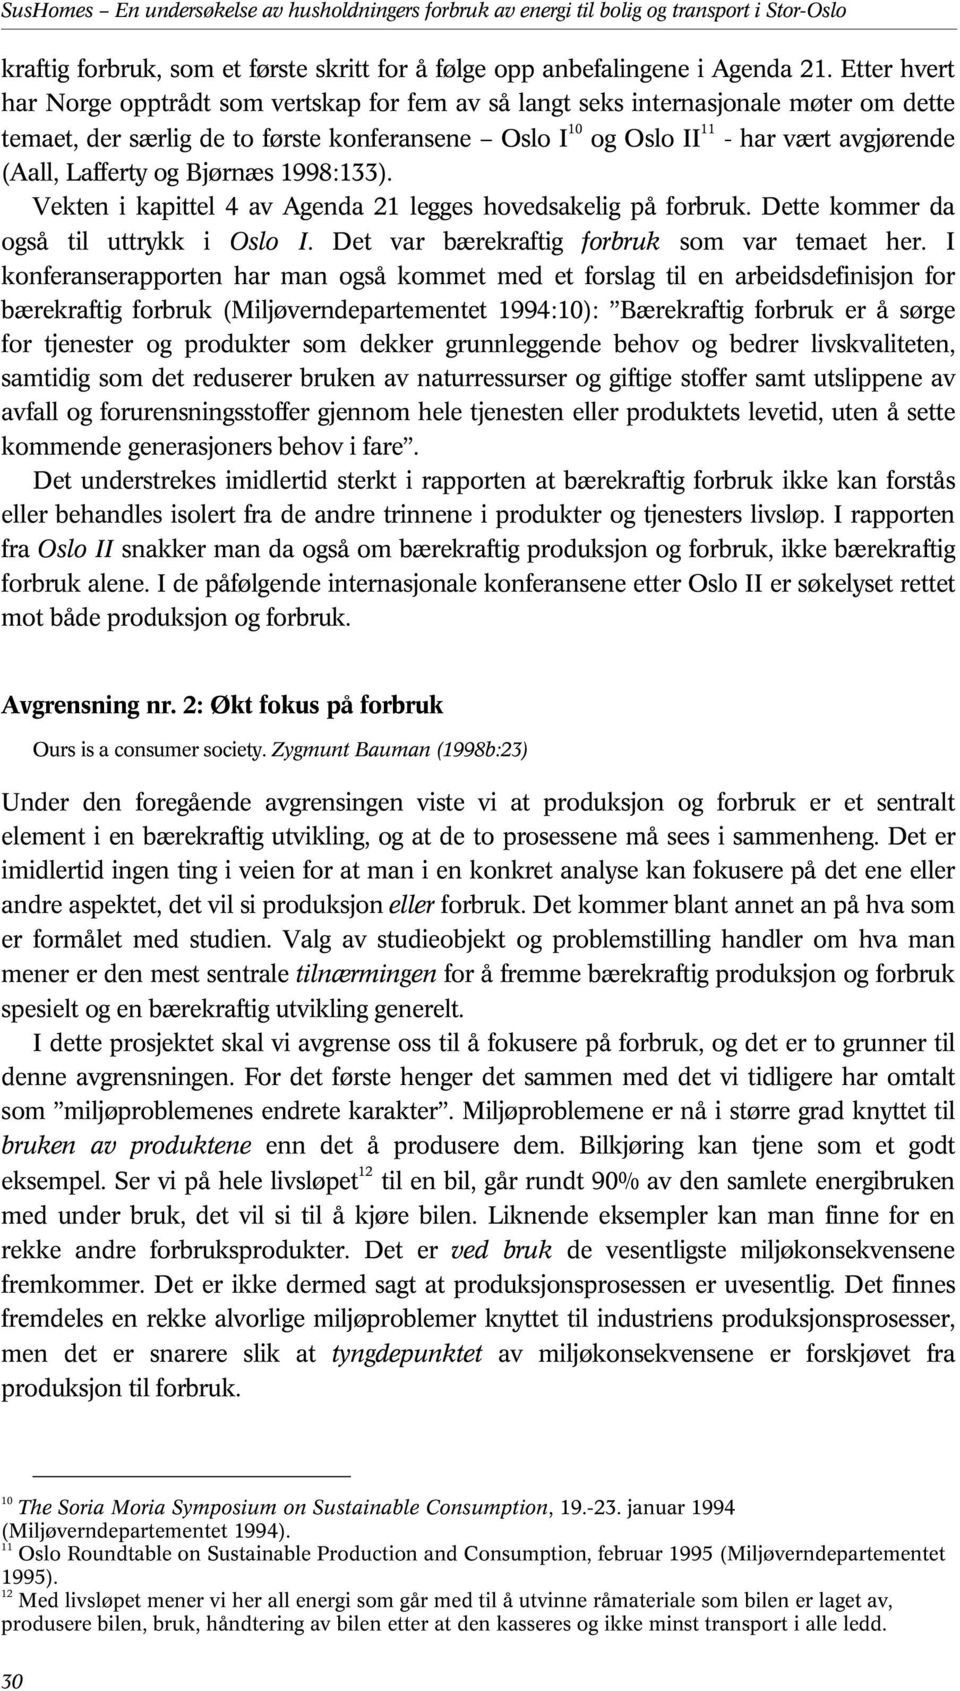 Lafferty og Bjørnæs 1998:133). Vekten i kapittel 4 av Agenda 21 legges hovedsakelig på forbruk. Dette kommer da også til uttrykk i Oslo I. Det var bærekraftig forbruk som var temaet her.